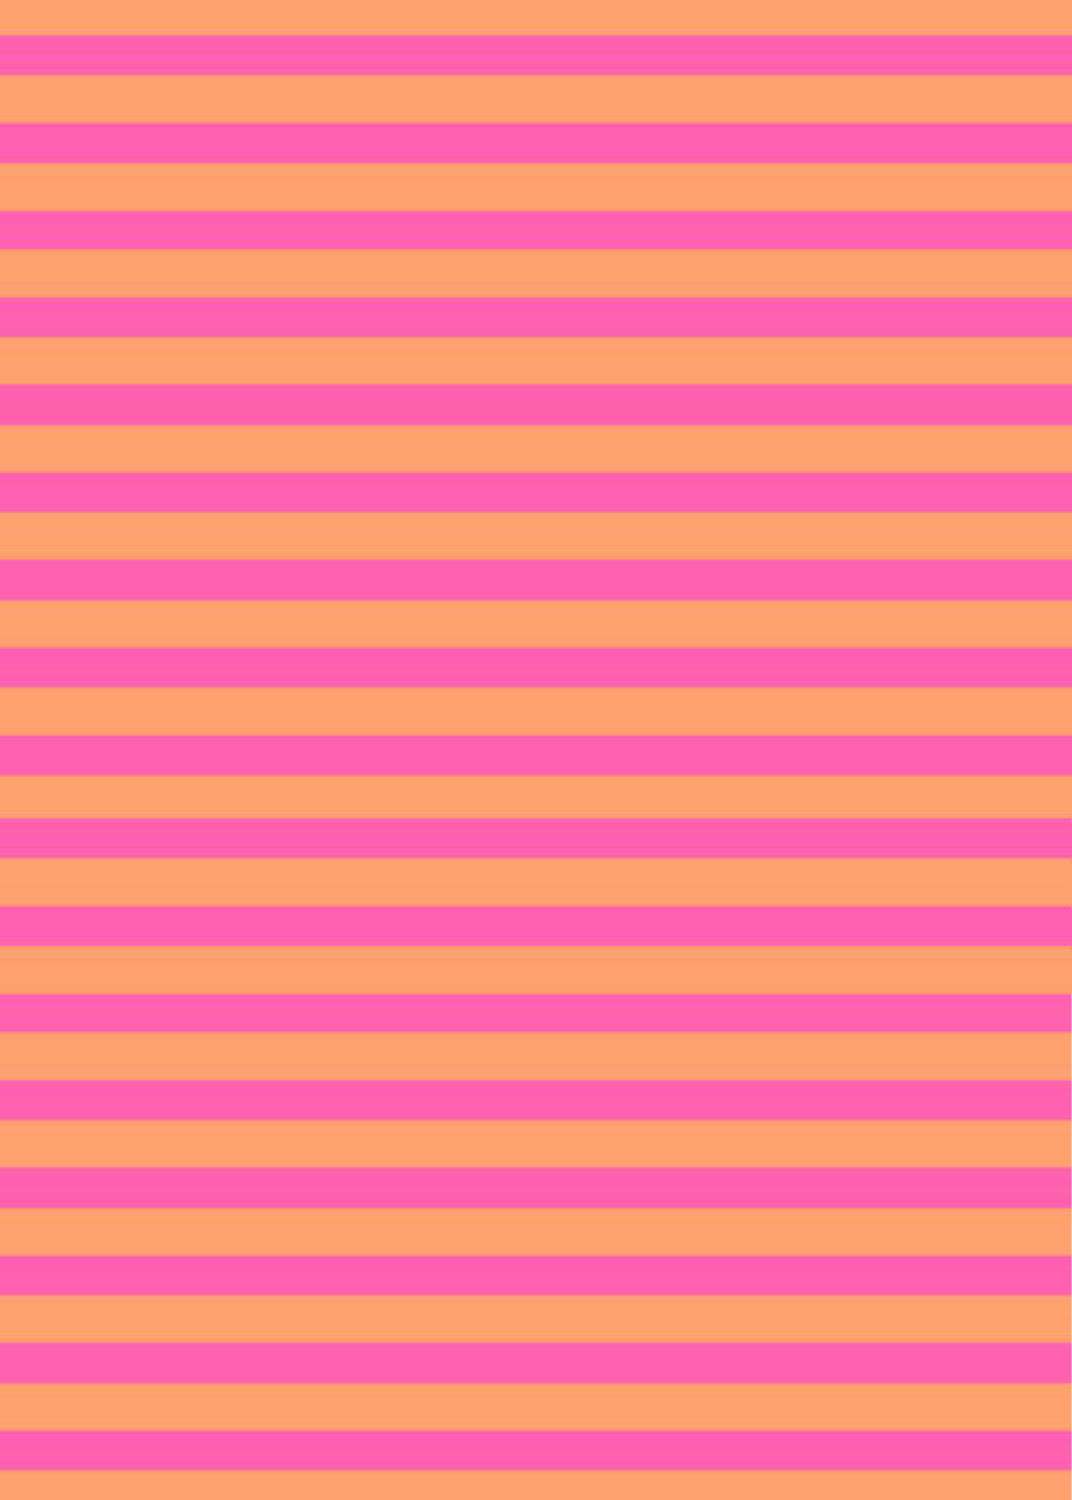 Country Club Skort 17 inch - Juicy Stripe Pink/Orange